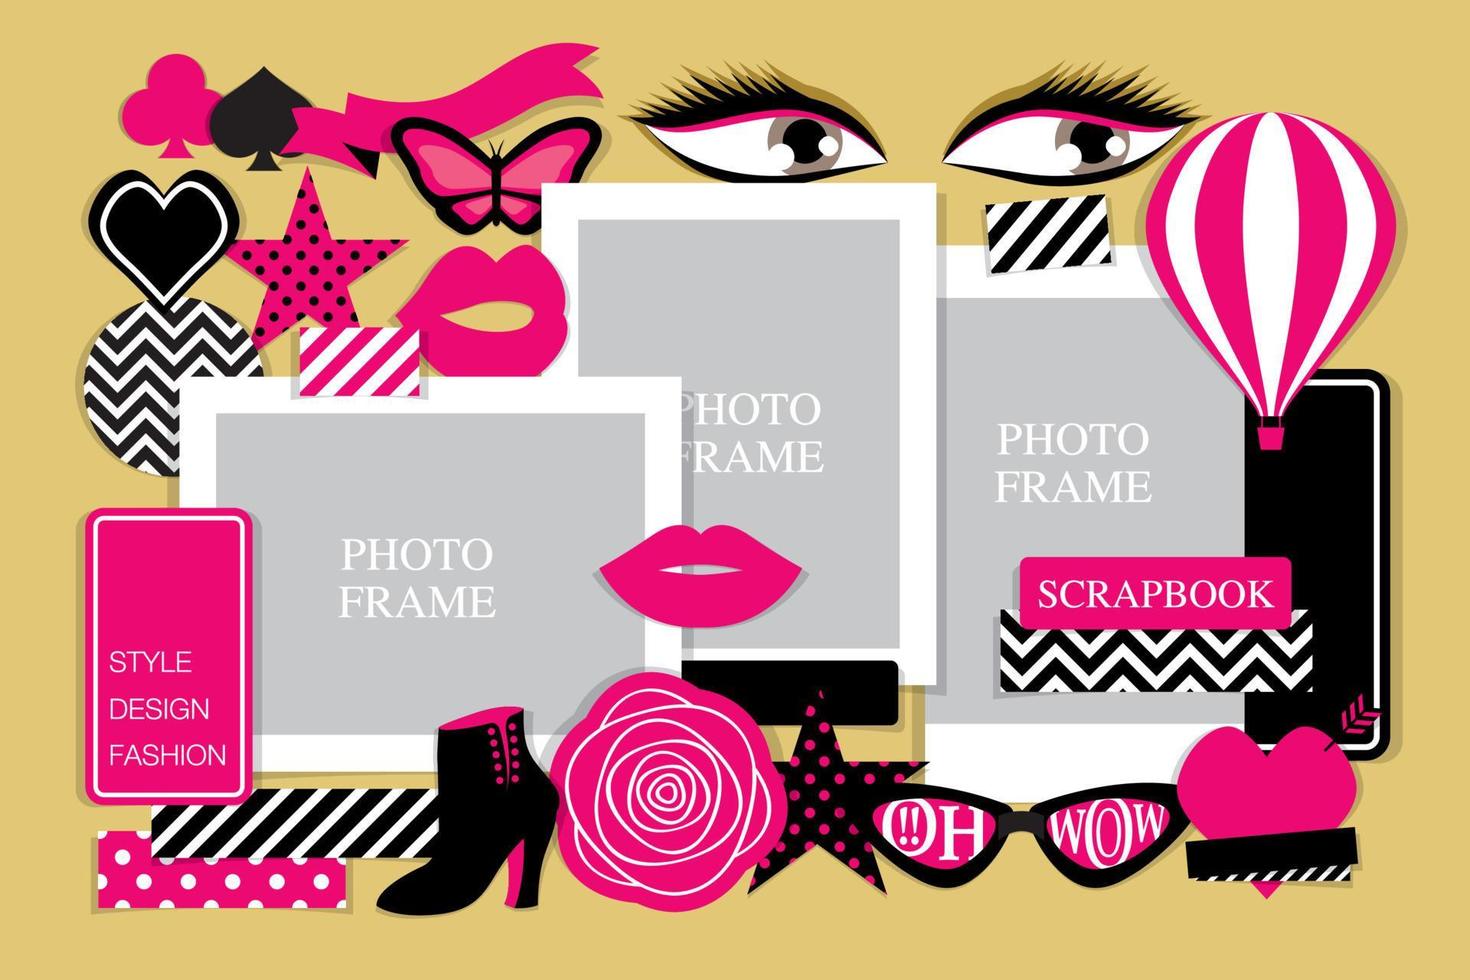 roze en zwarte thema mode-items vector voor scrapbook of collage artwork.